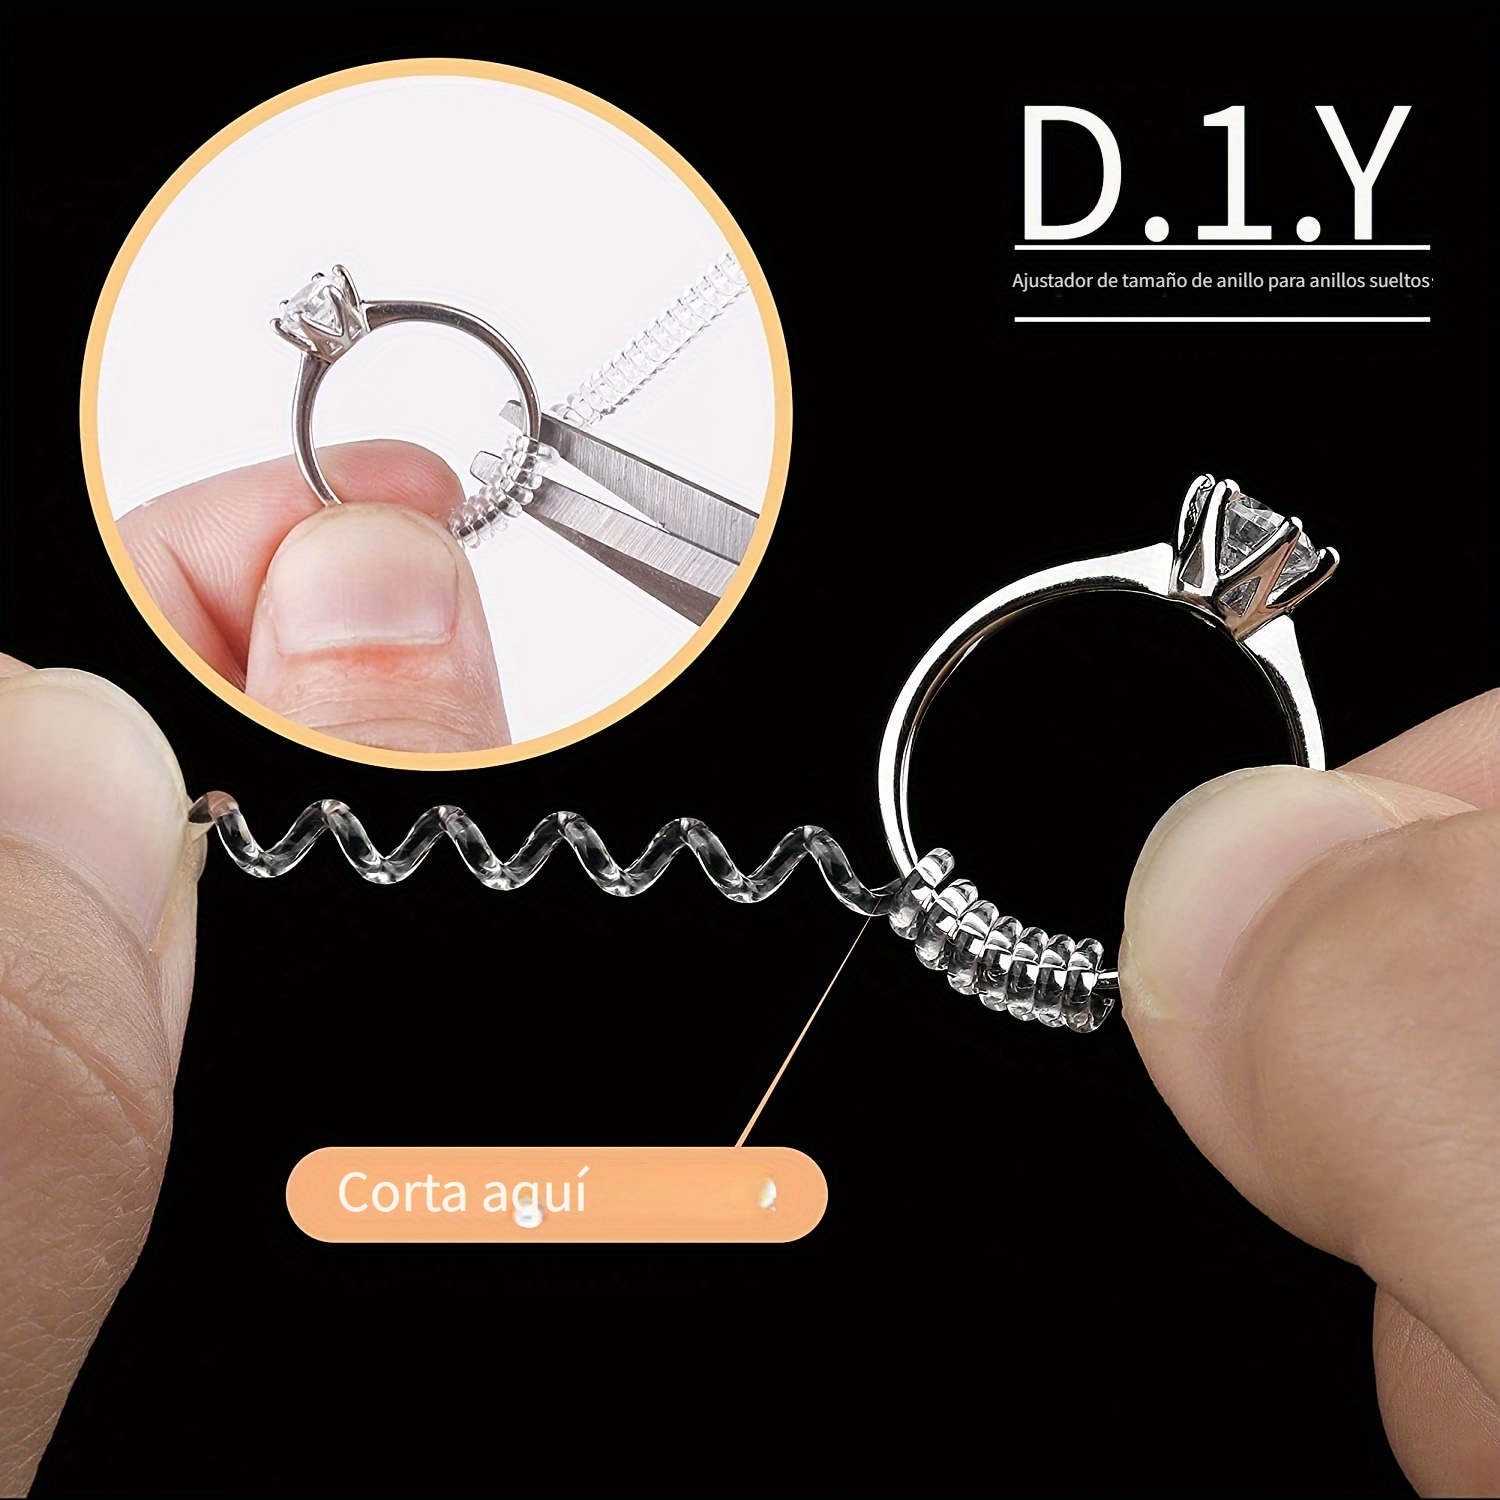 Ajustador de tamaño de anillo de 12 piezas para anillos sueltos Ajustador  de tamaño de anillo de silicona transparente Protectores de anillo invisible